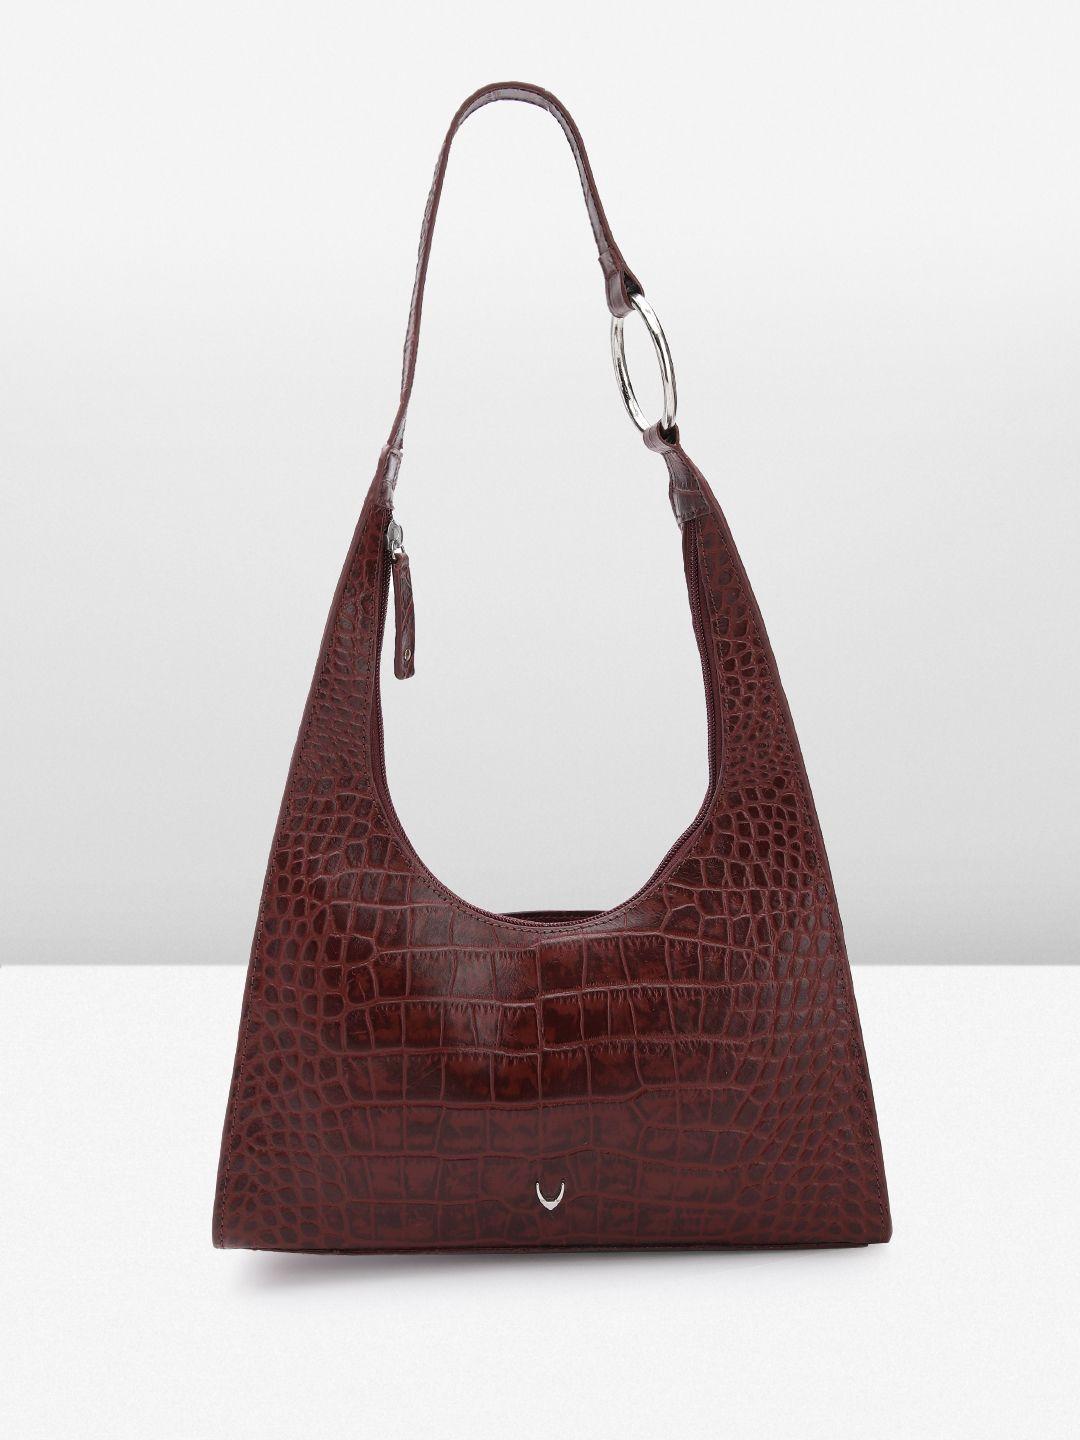 hidesign croc textured leather structured shoulder bag